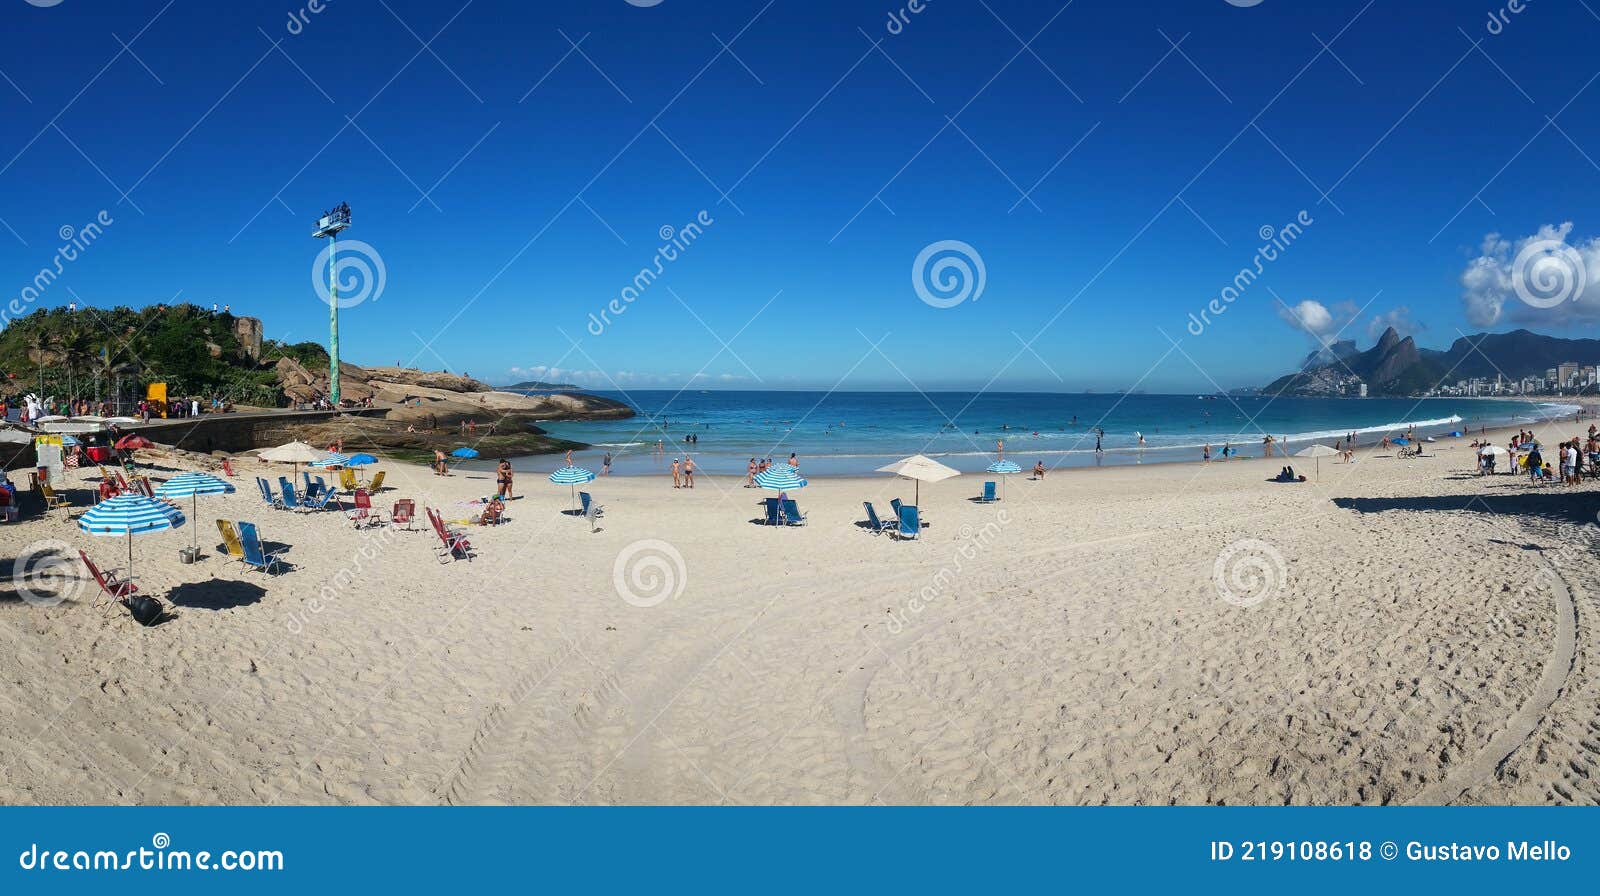 巴西民众享受夏日时光 里约海滨沙滩人满为患